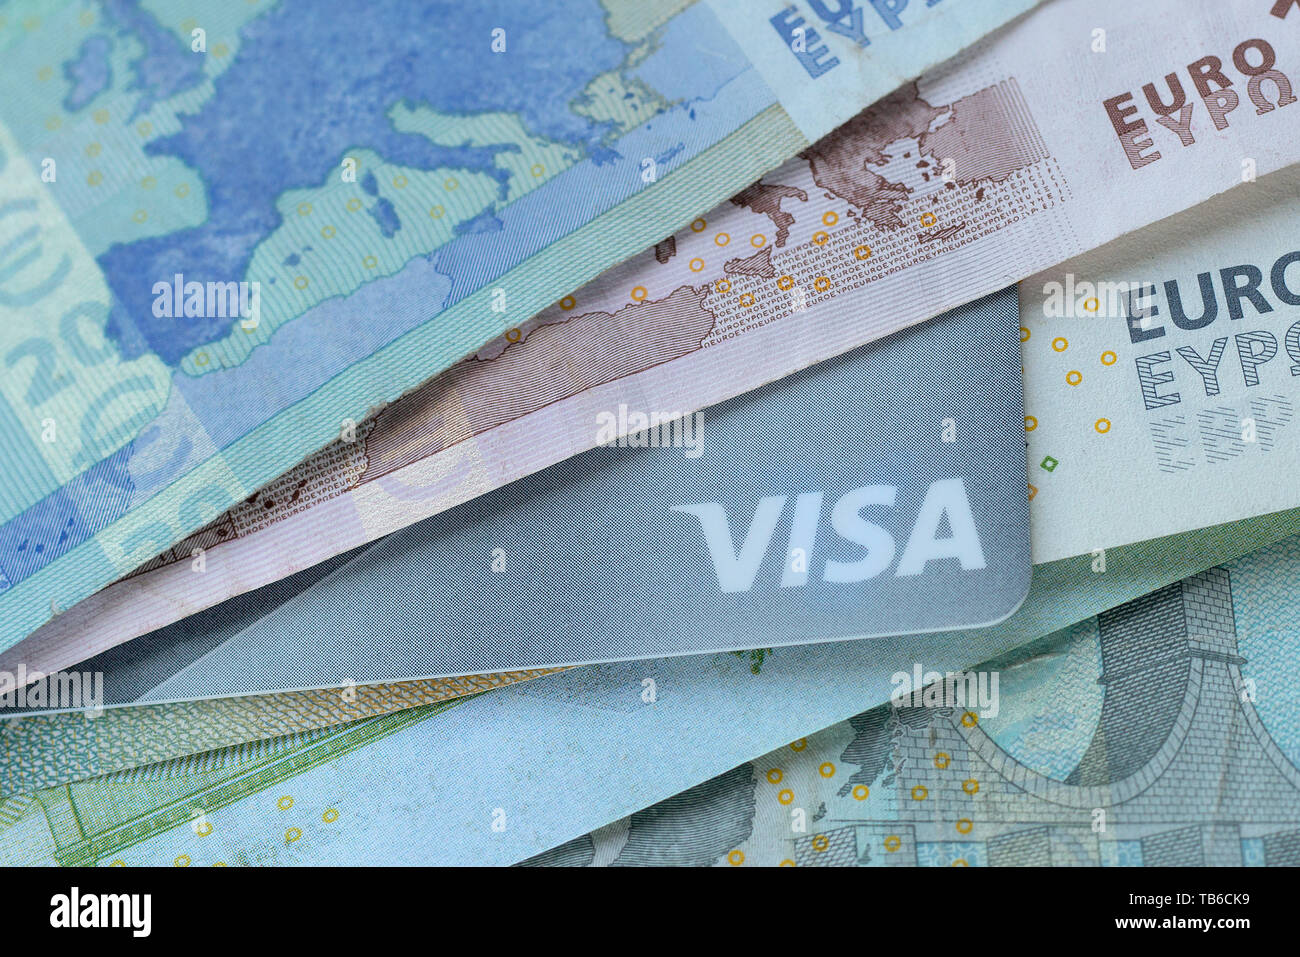 Mosca, Russia - Maggio 2019: carta di credito con il logo Visa e le banconote in euro. Immagine può essere utilizzata per argomenti come business, finanza, banche, assicurazioni Foto Stock